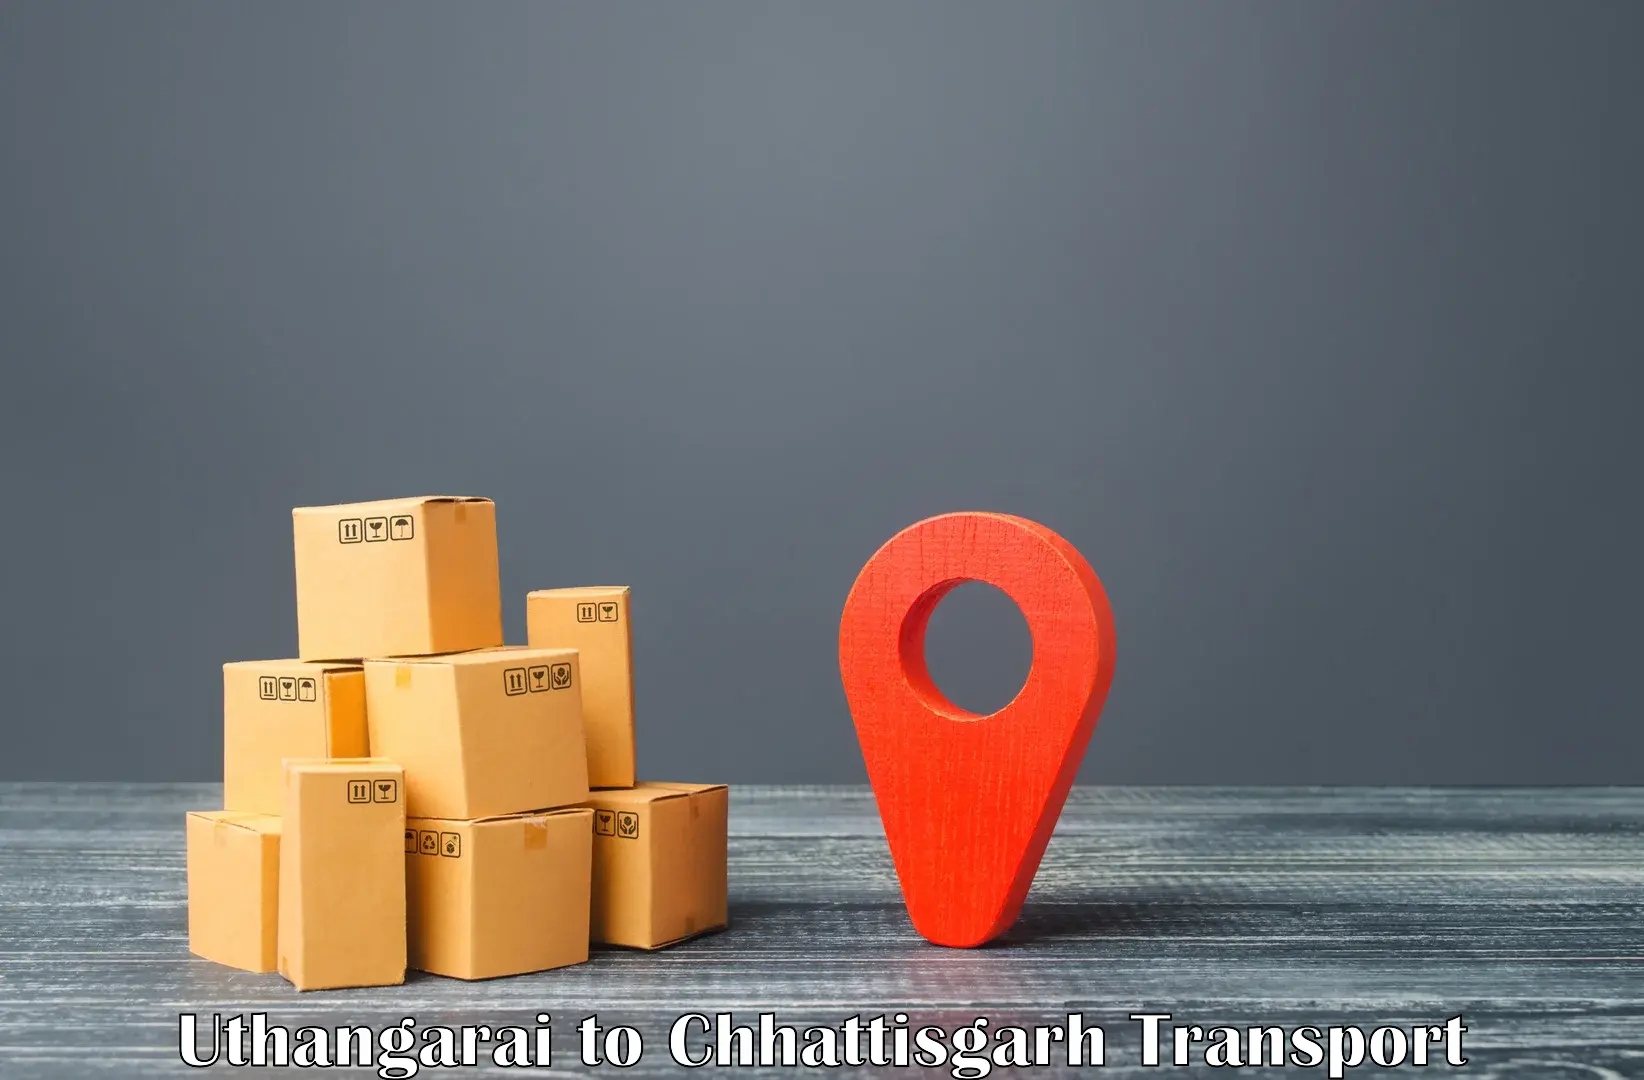 Best transport services in India Uthangarai to Raigarh Chhattisgarh